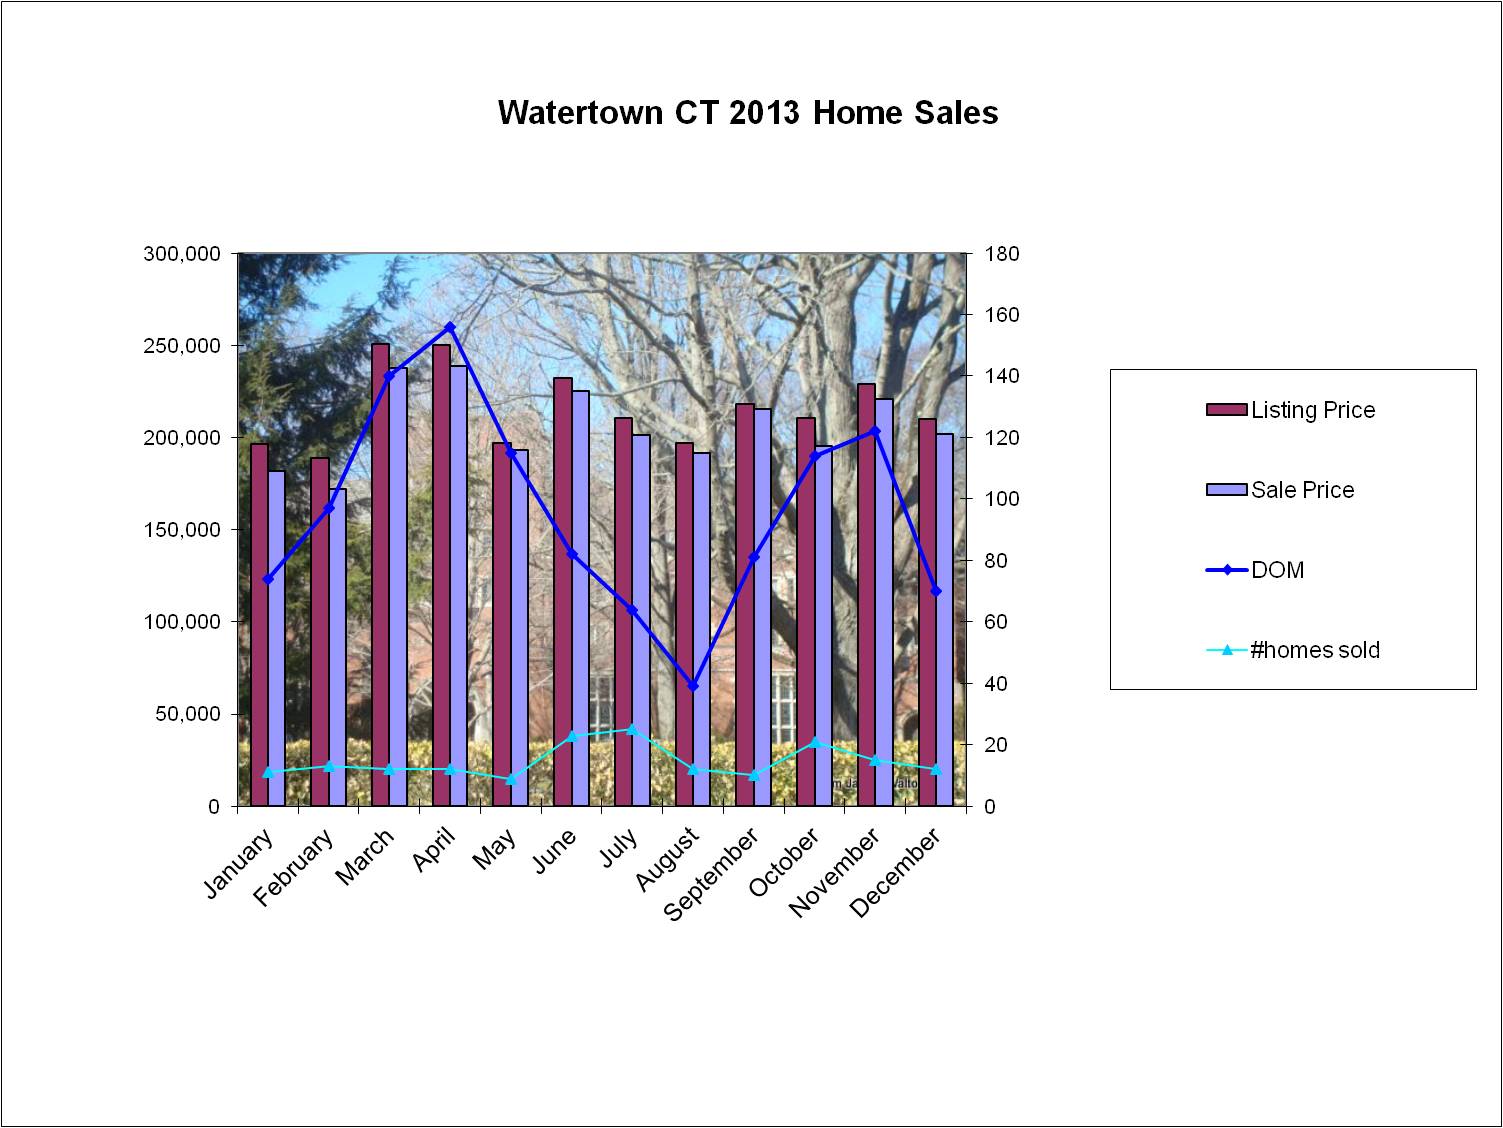 Watertown CT 2013 real estate market statistics